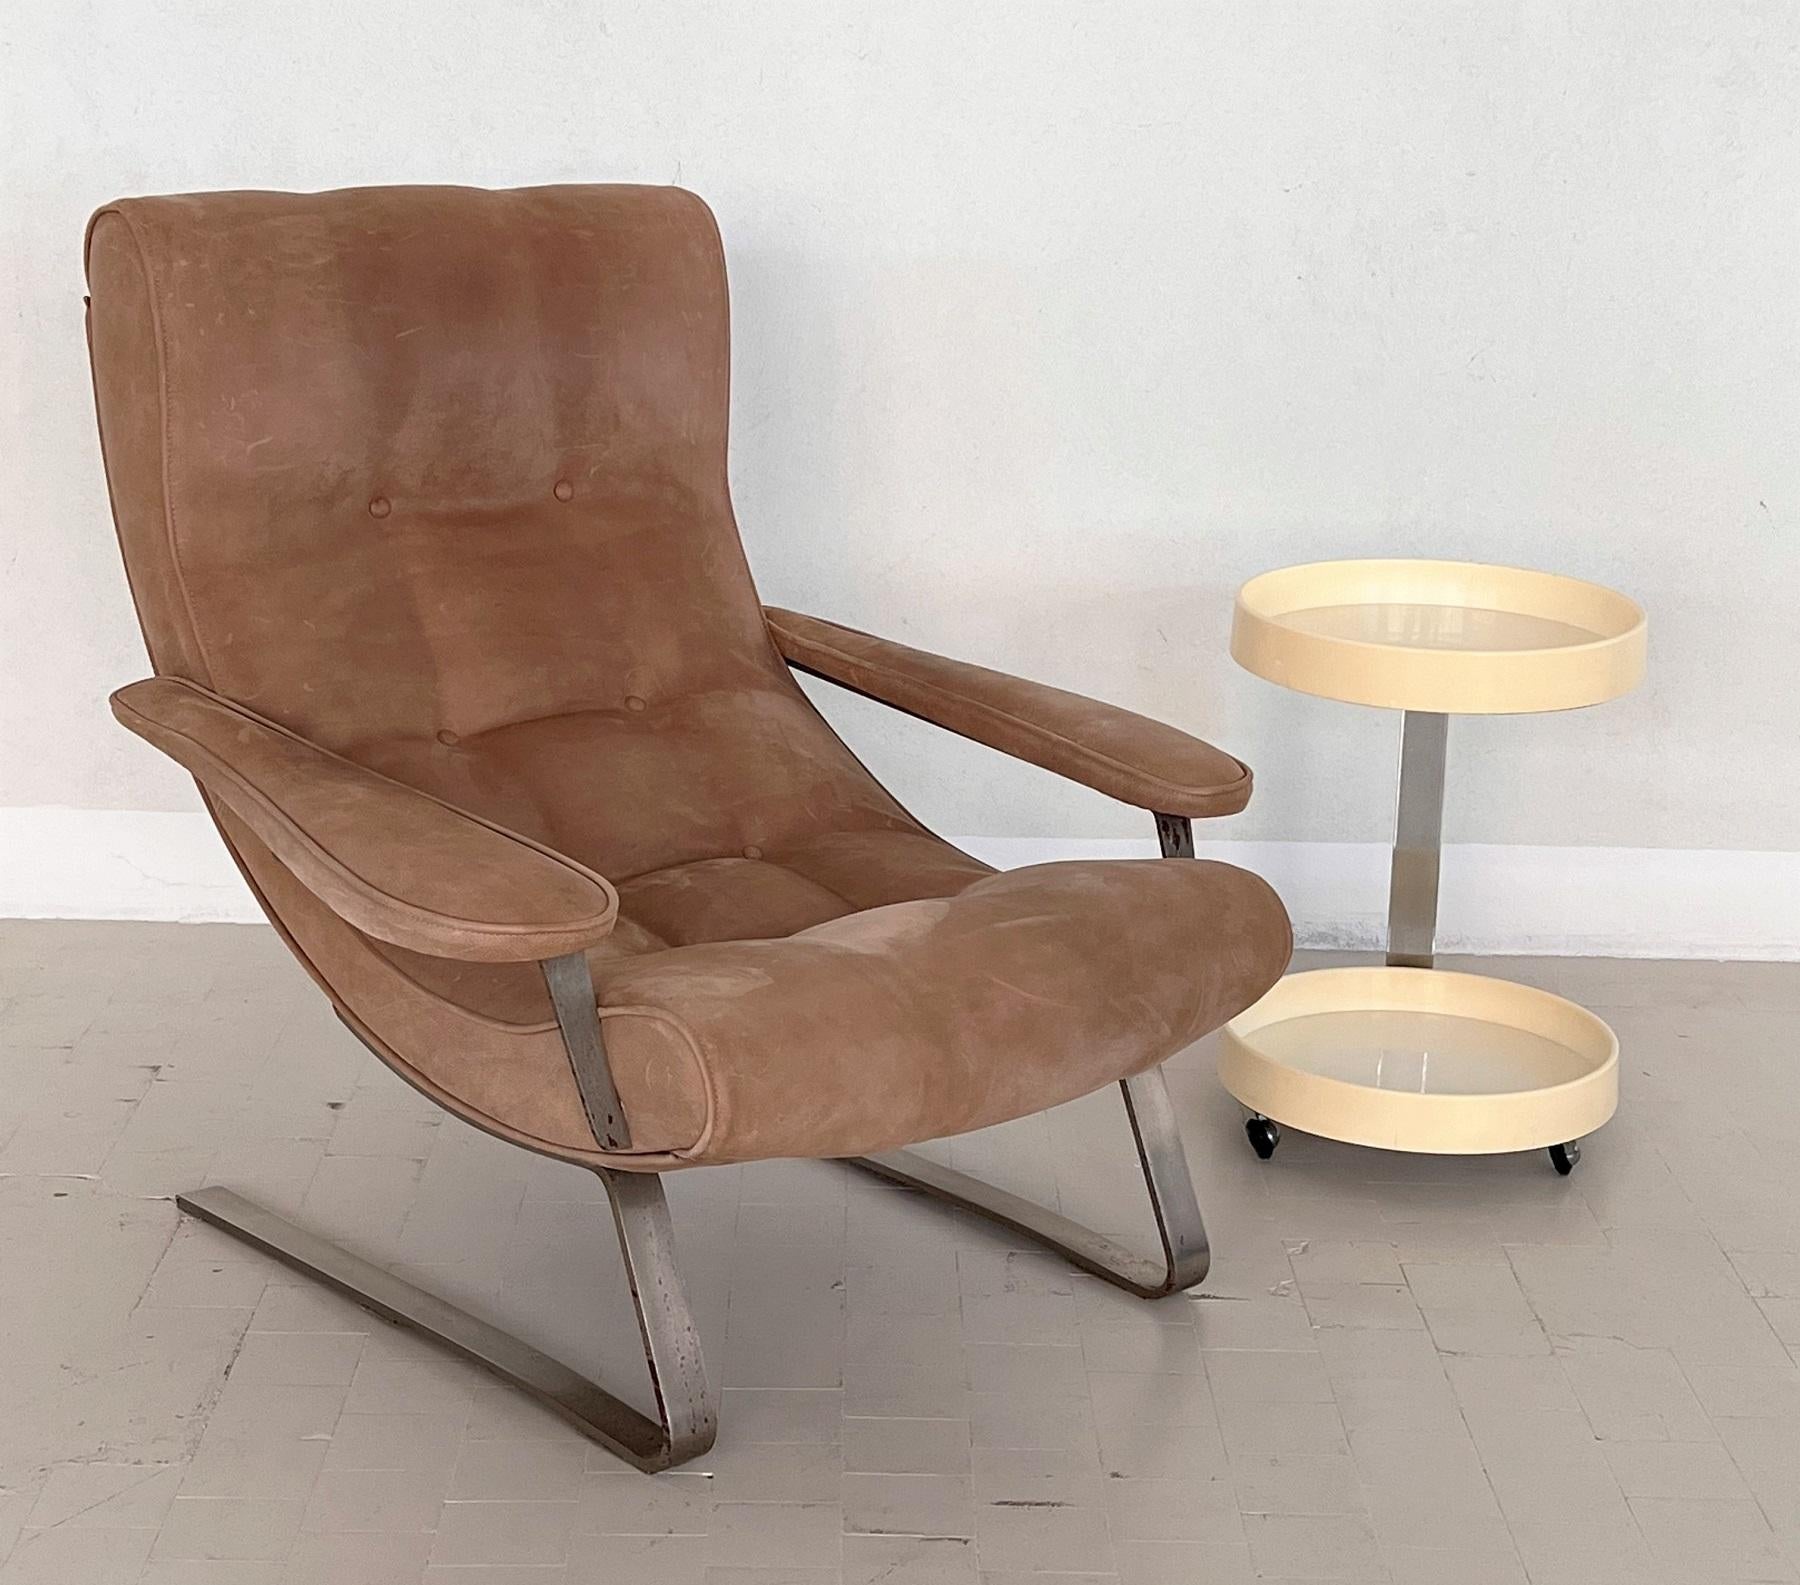 Grande chaise longue conçue par Guido Bonzani, fabriquée par Tecnosalotto dans les années 1970, Italie.
La chaise a des pieds à ressort en acier solide et sont chromés ; la plaque chromée montre des signes d'utilisation et d'usure, ce qui donne